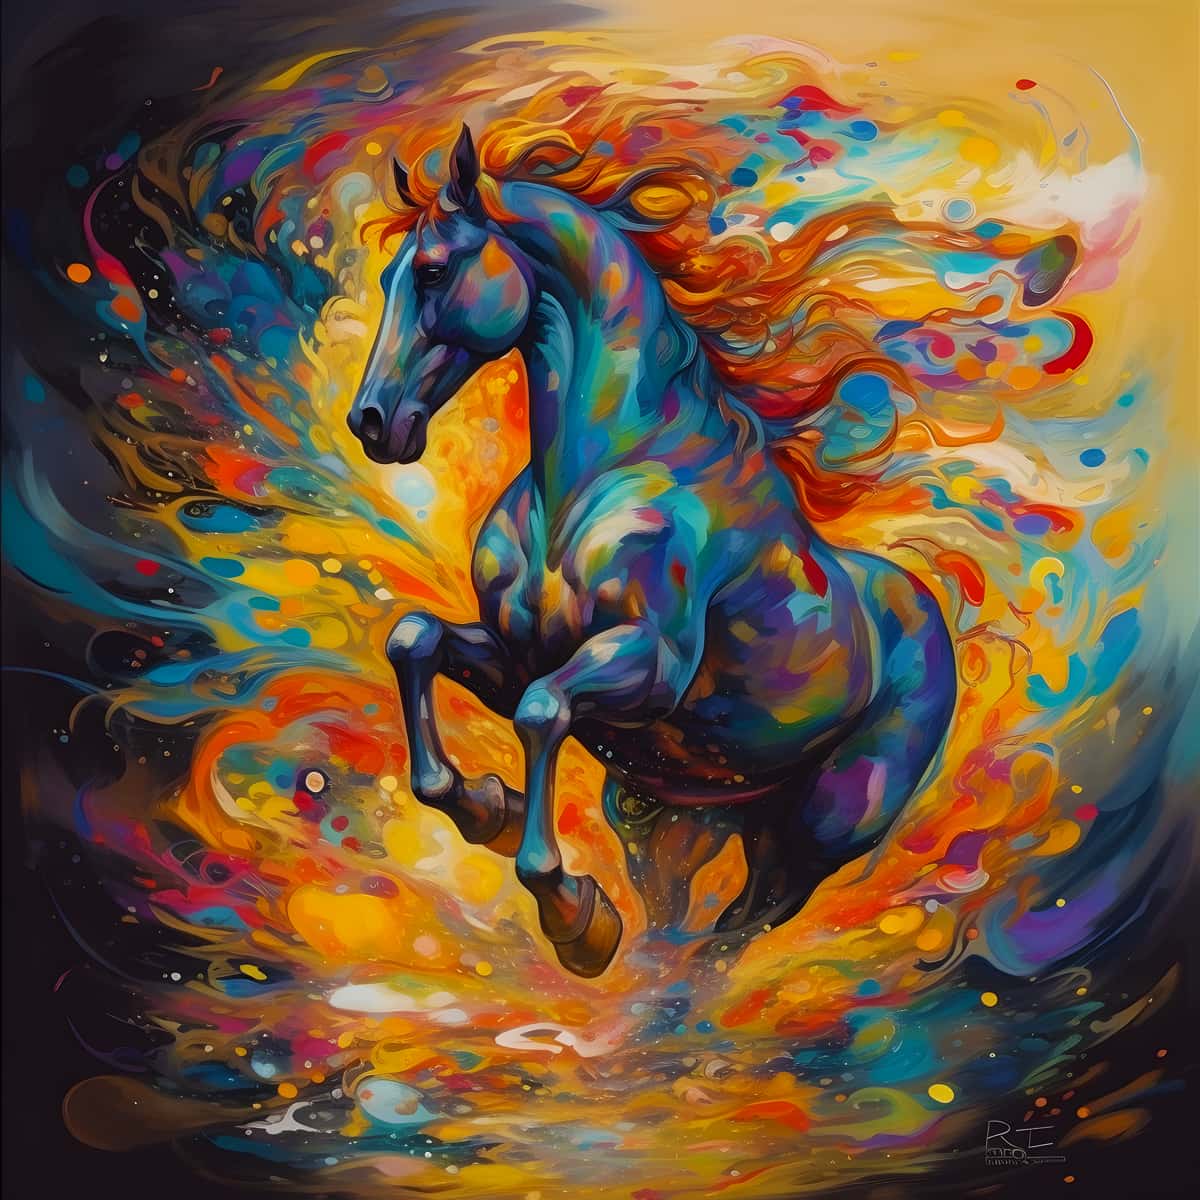 Diamond Painting - Galoppierendes Pferd - gedruckt in Ultra-HD - Neu eingetroffen, Pferd, Quadratisch, Tiere